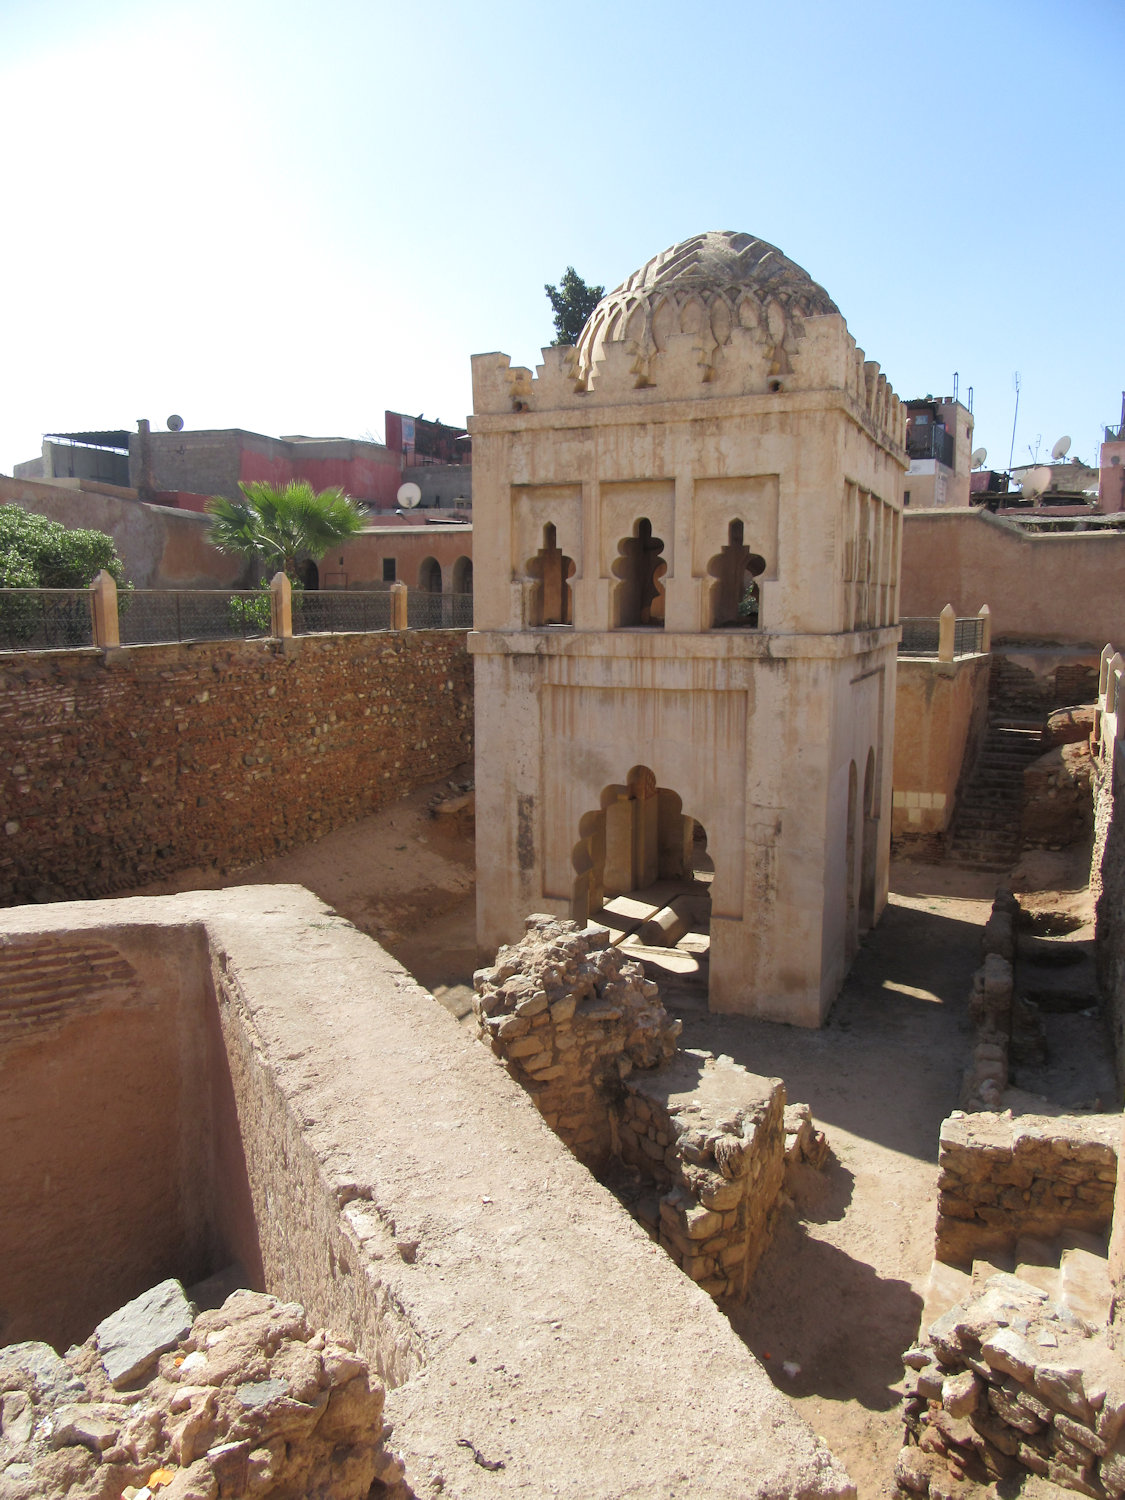 Die Koubba, das Grab- und Heiligendenkmal der Almoraviden-Dynastie in Marrakech, errichtet um 1120, 1948 wieder entdeckt und dann ausgegraben